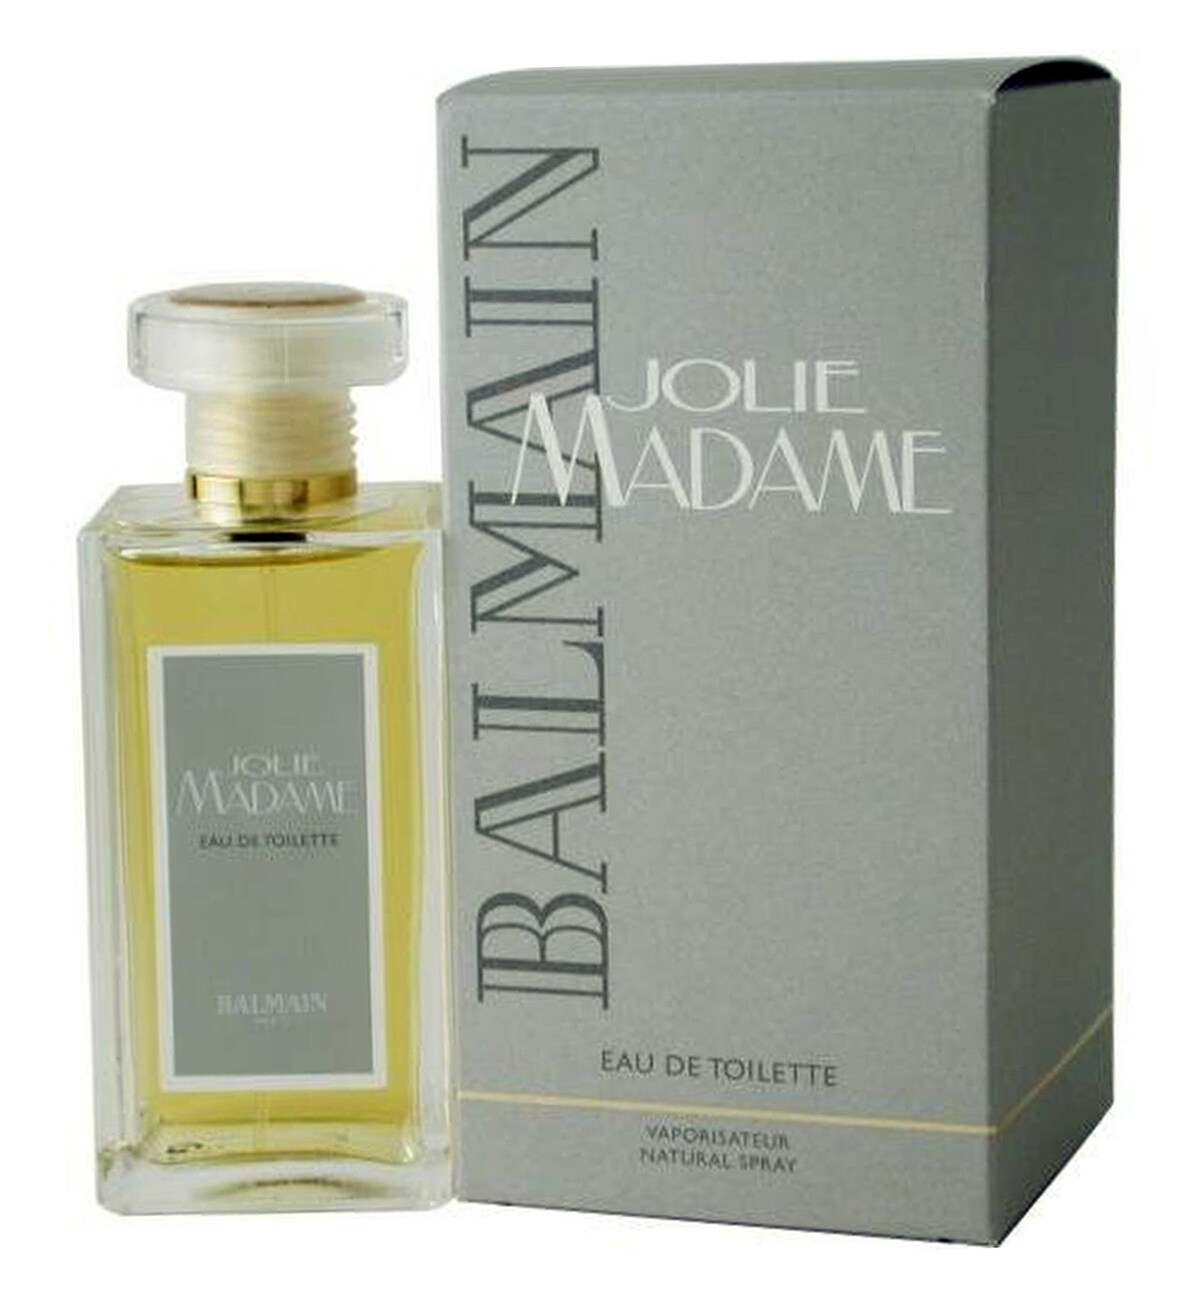 Jolie Madame by Balmain (Eau de Toilette) » Reviews  Perfume Facts